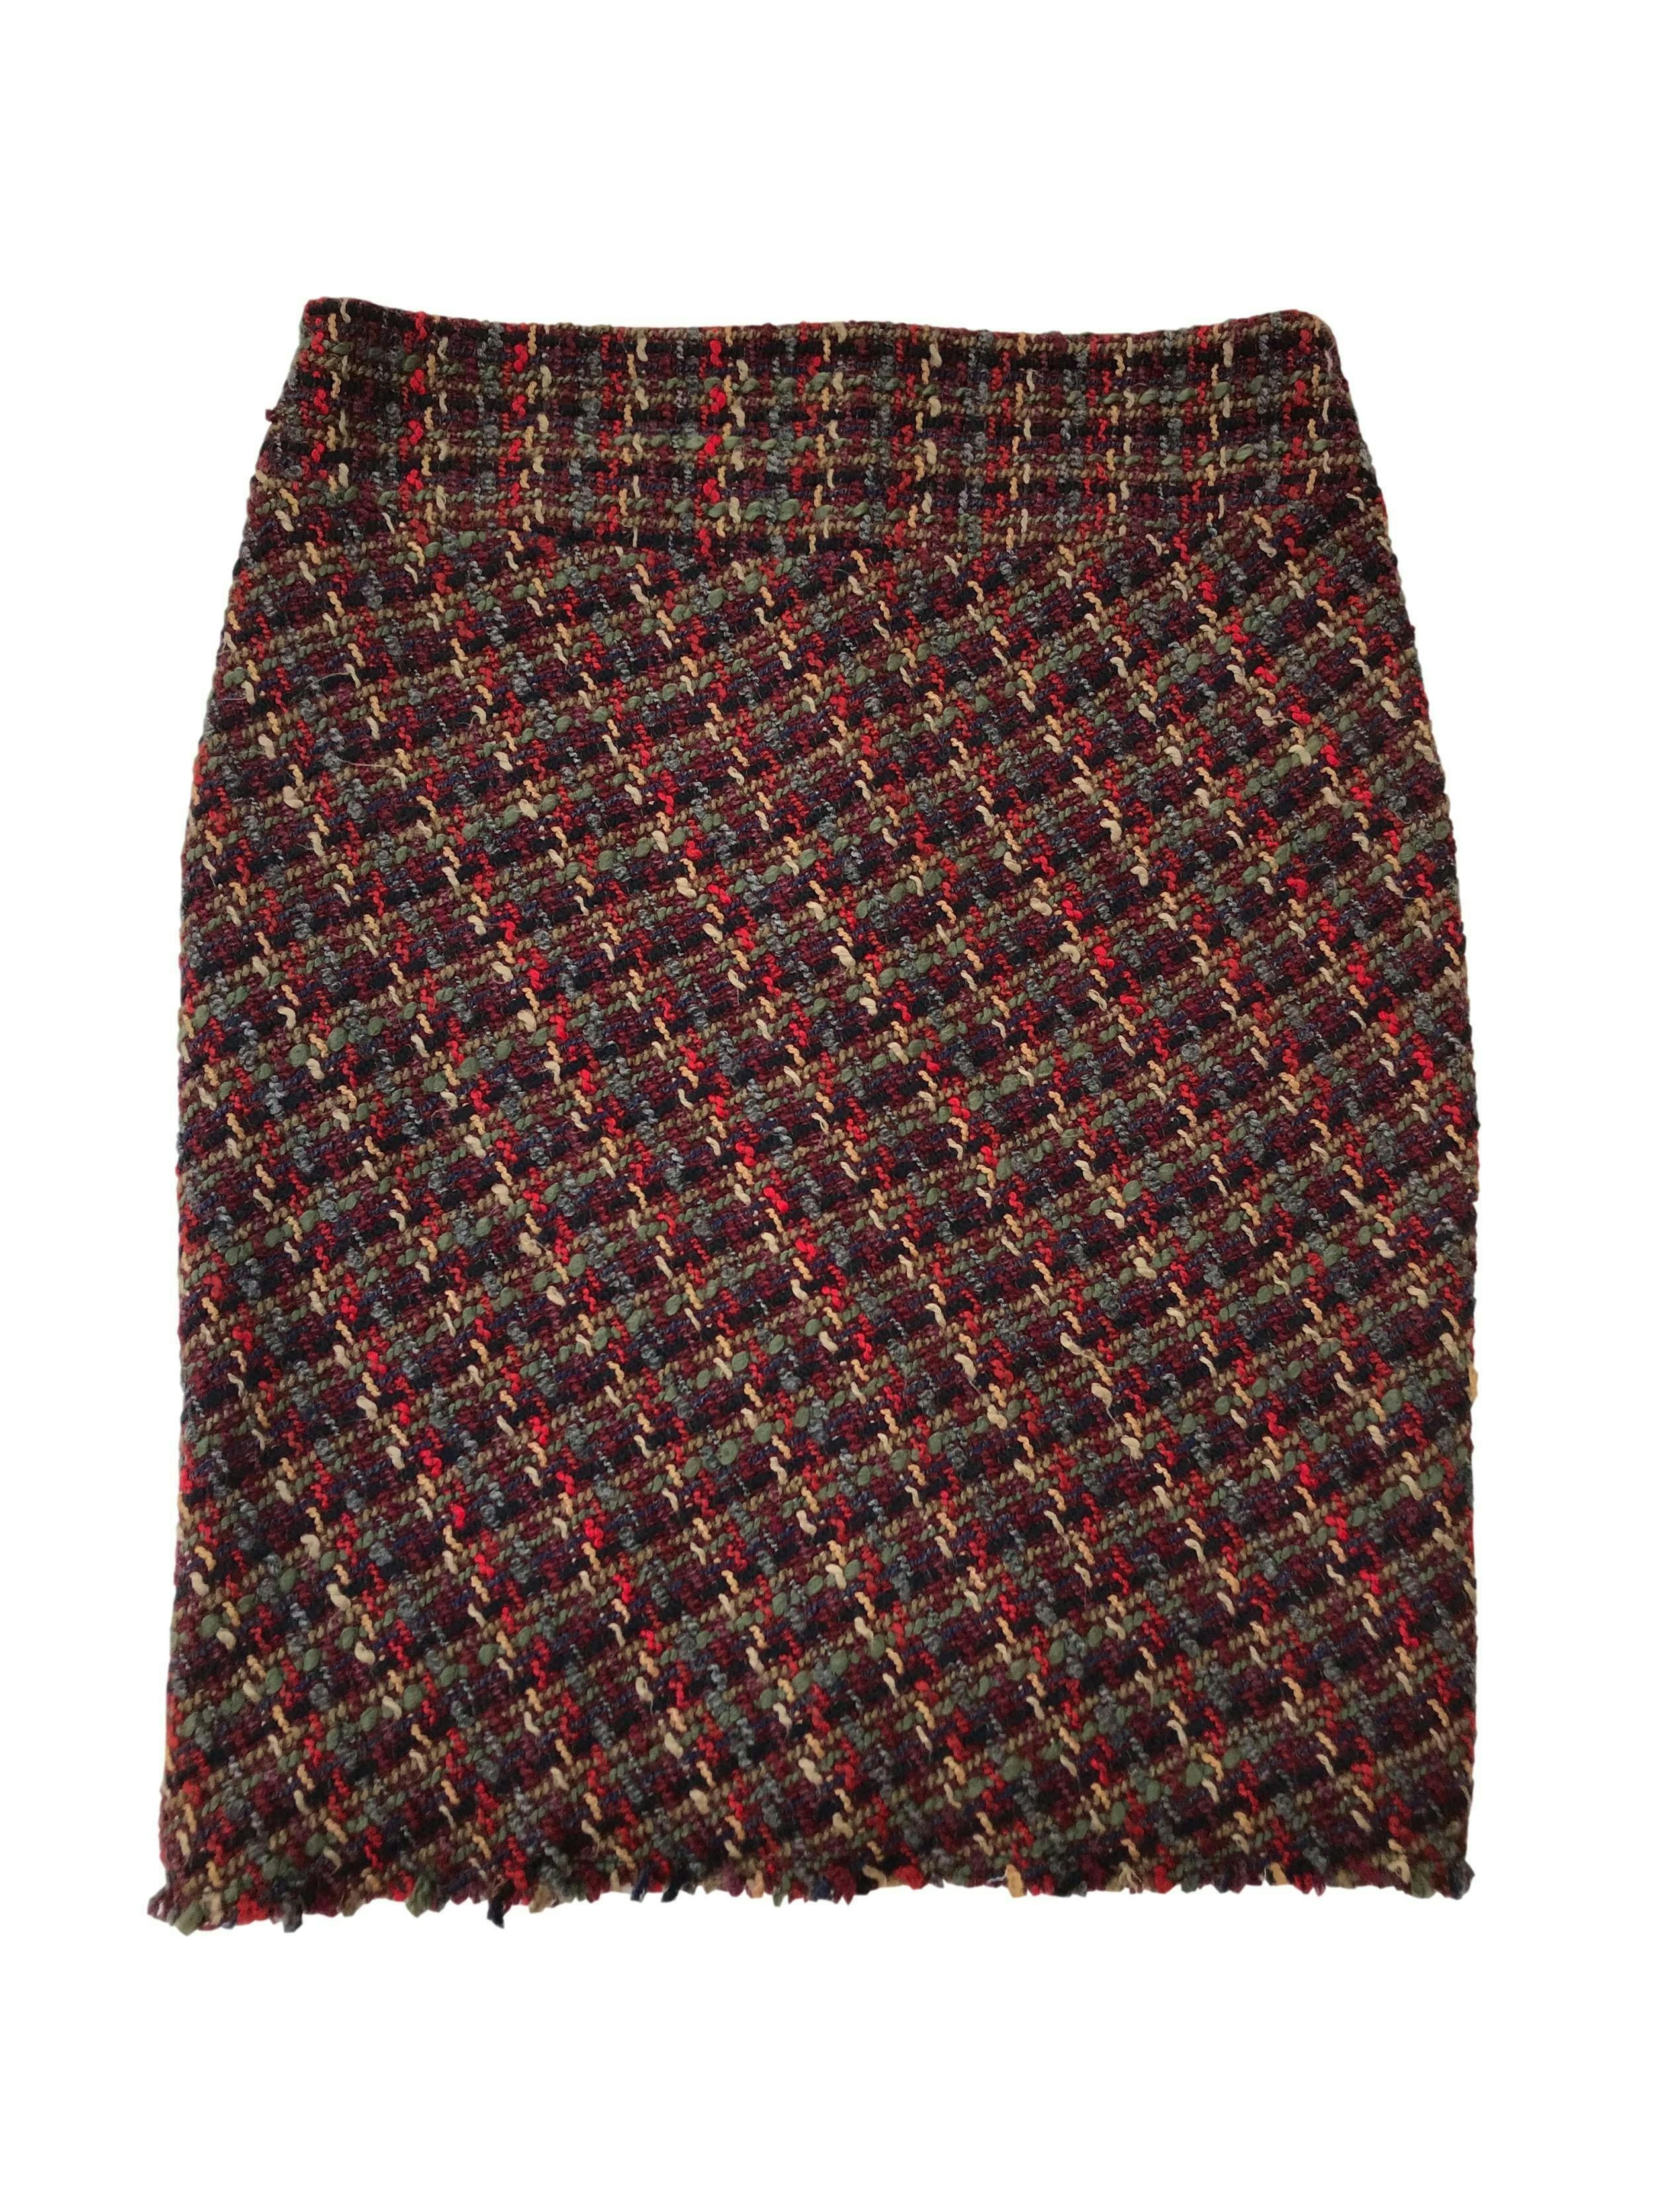 Falda Philosophy de tweed en tonos cálidos 70% lana, forrada, con cierre y abertura posterior en la basta. Cintura 86cm Largo 60cm. Tiene Blazer conjunto.